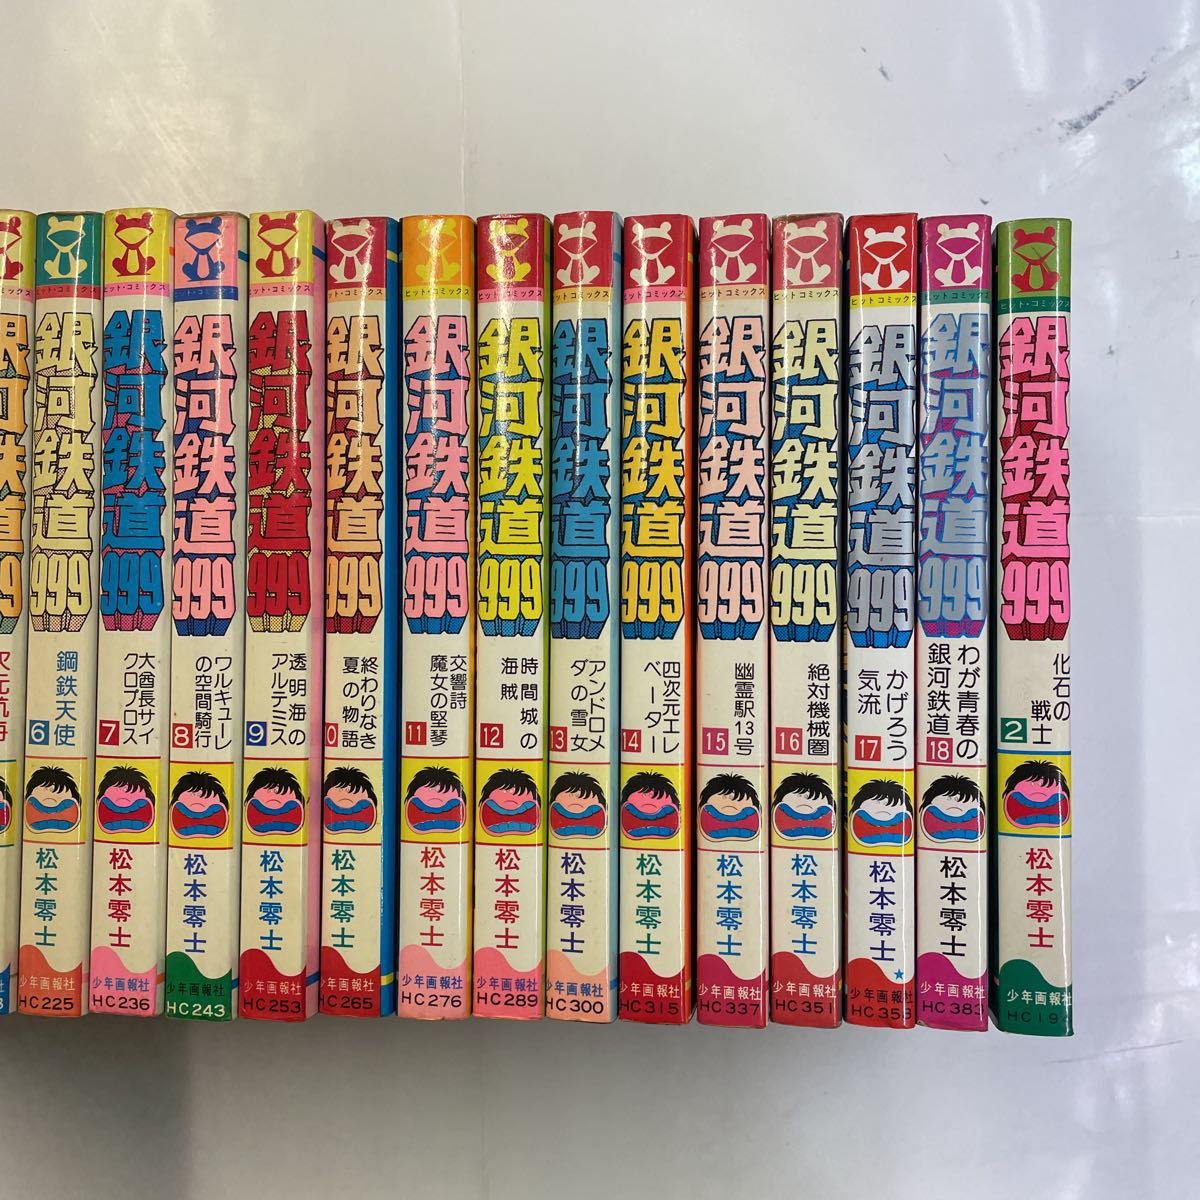  старая книга манга все тома в комплекте первая версия 11 шт. ввод Matsumoto 0 . Ginga Tetsudou 999 дополнение 2 шт красивый имеется все 19 шт.!